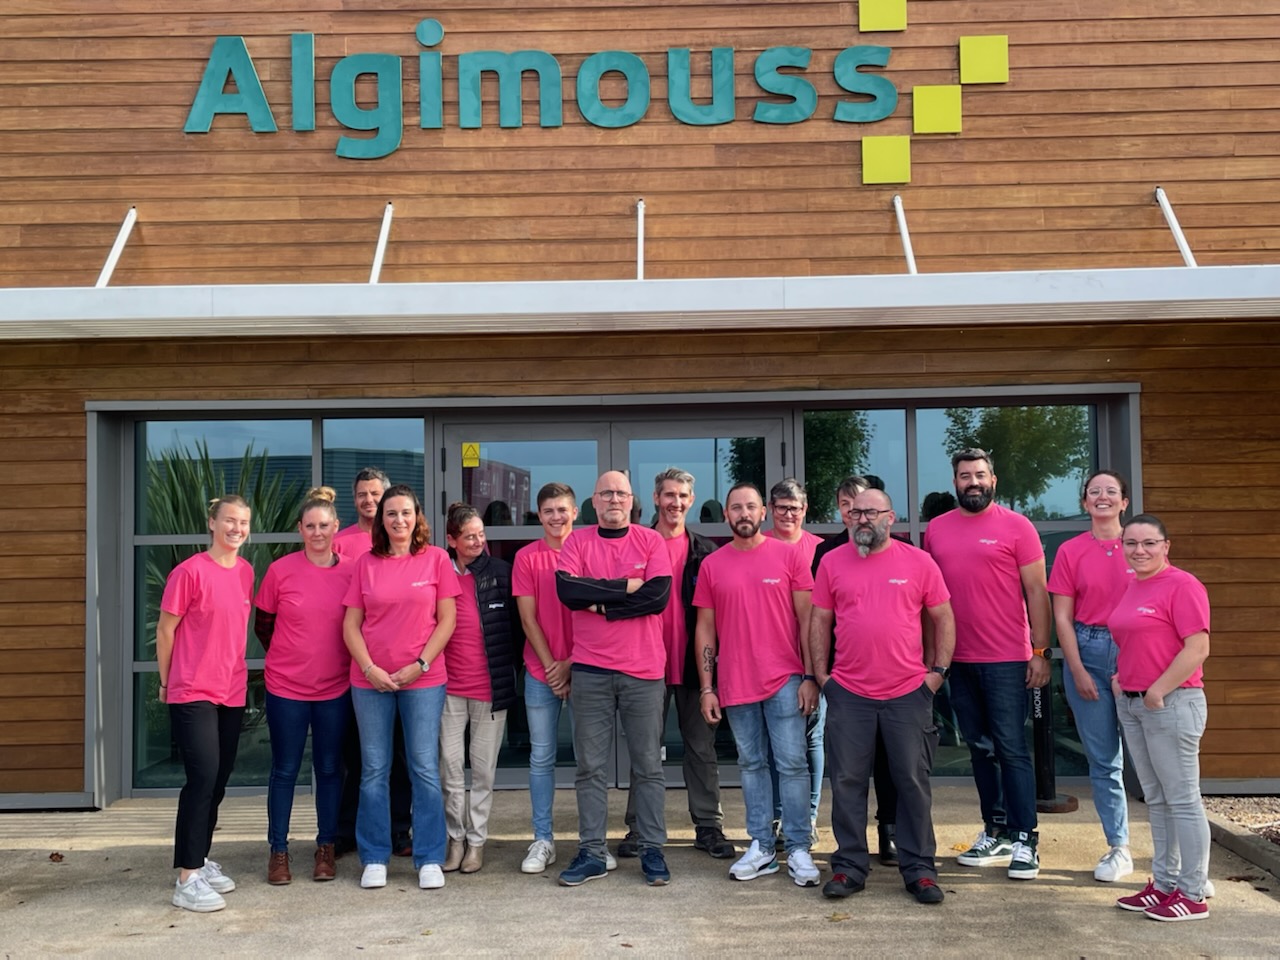 Algimouss soutient Octobre Rose - Algimouss